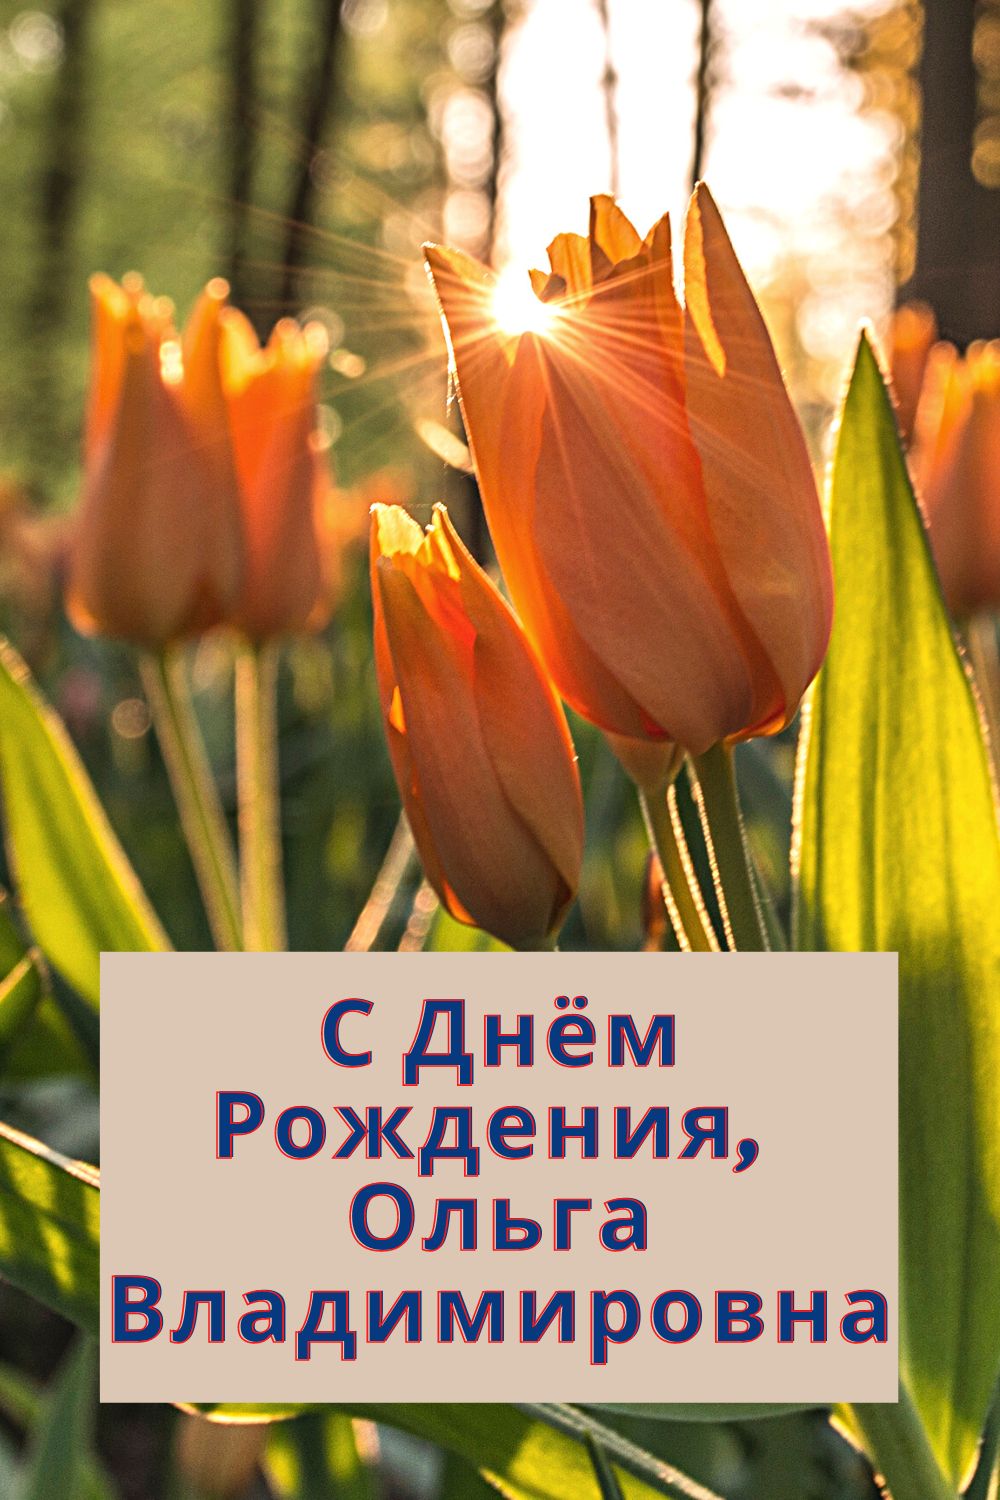 Пожелания в картинках для Дня Рождения Ольги Владимировны